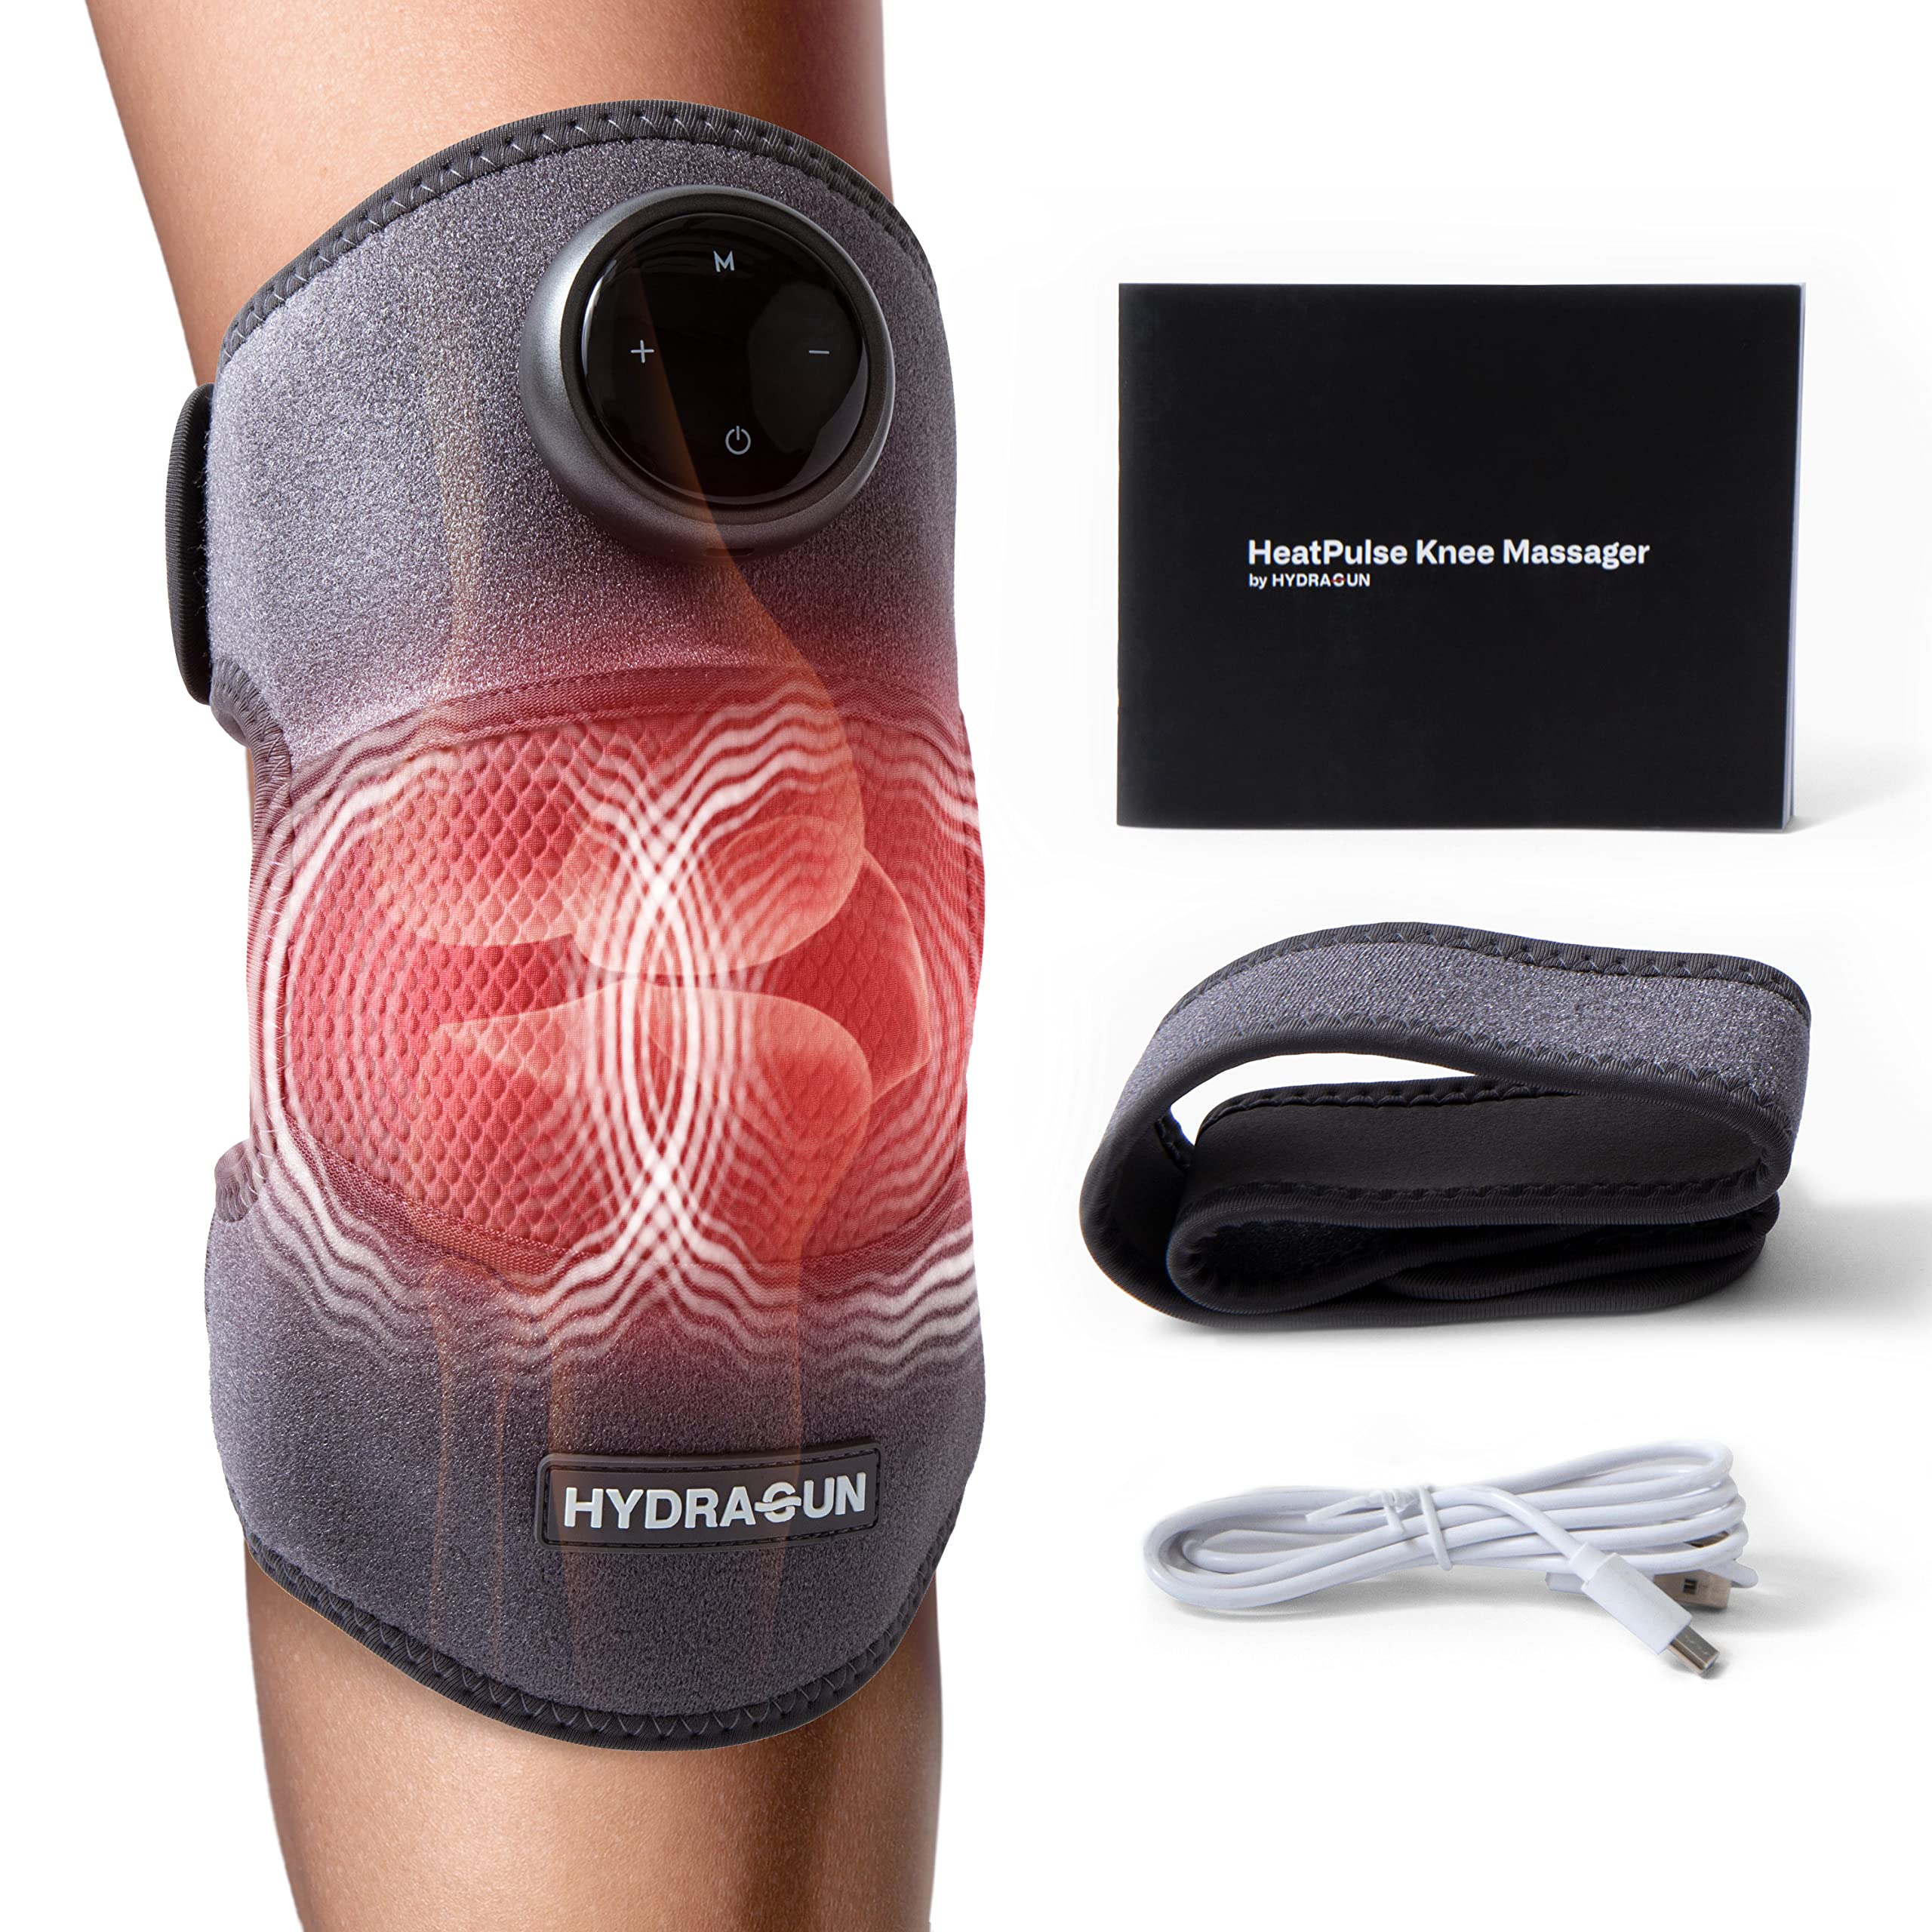 HYDRAGUN HeatPulse Knee Massager